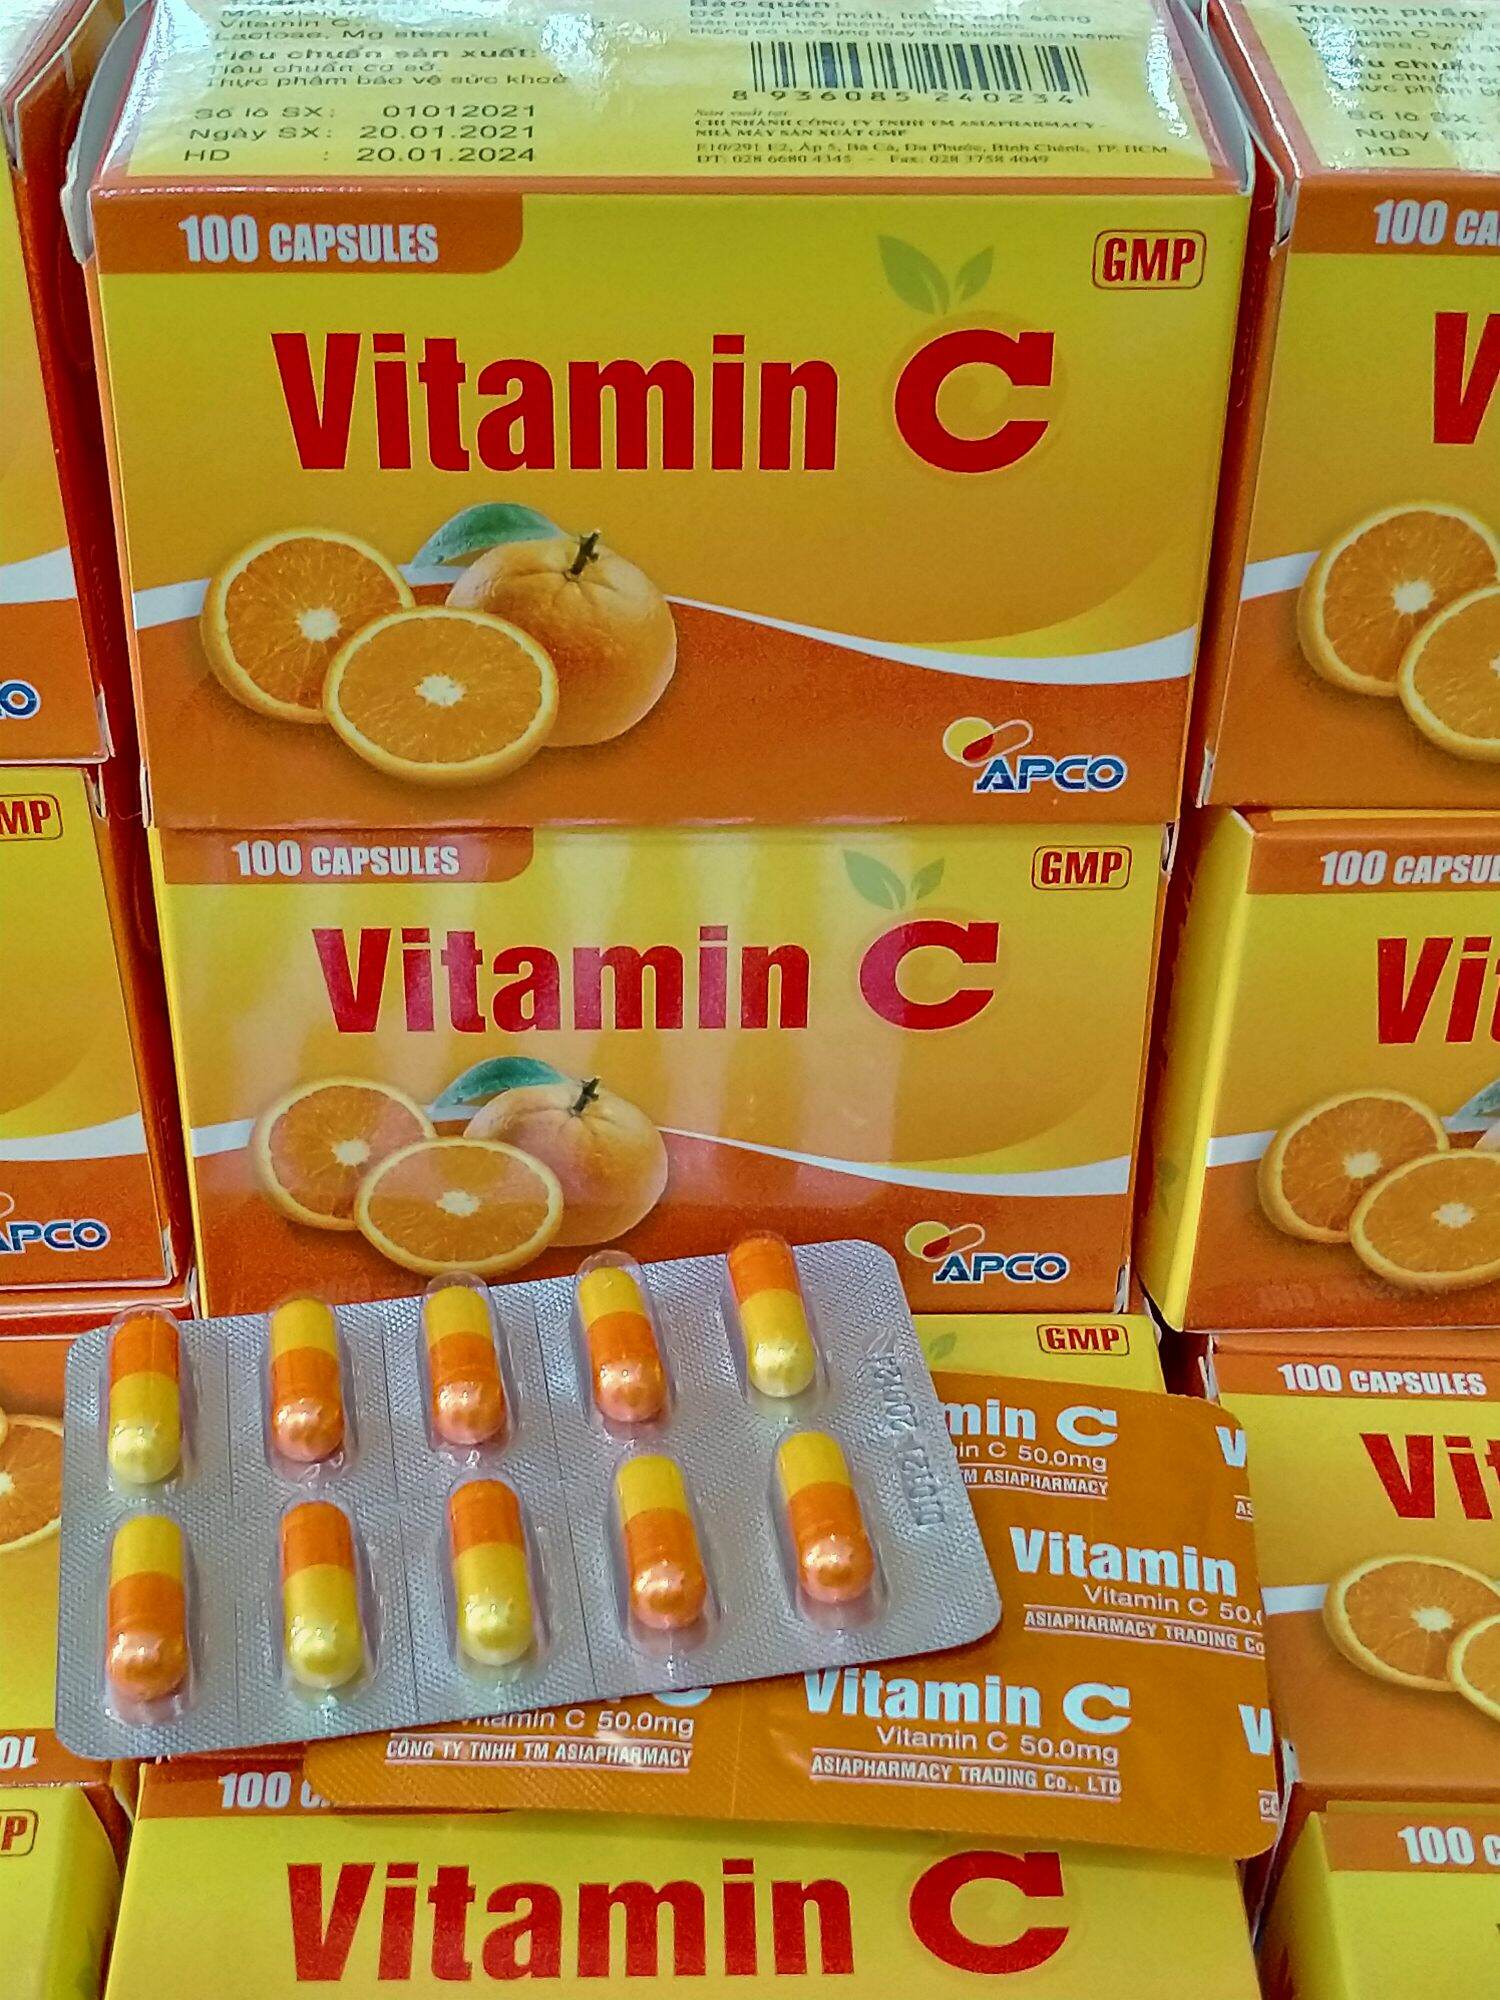 Viên uống VITAMIN C Apco hộp 100 viên giúp bền vững thành mạch, nâng cao sức đề kháng cho cơ thể